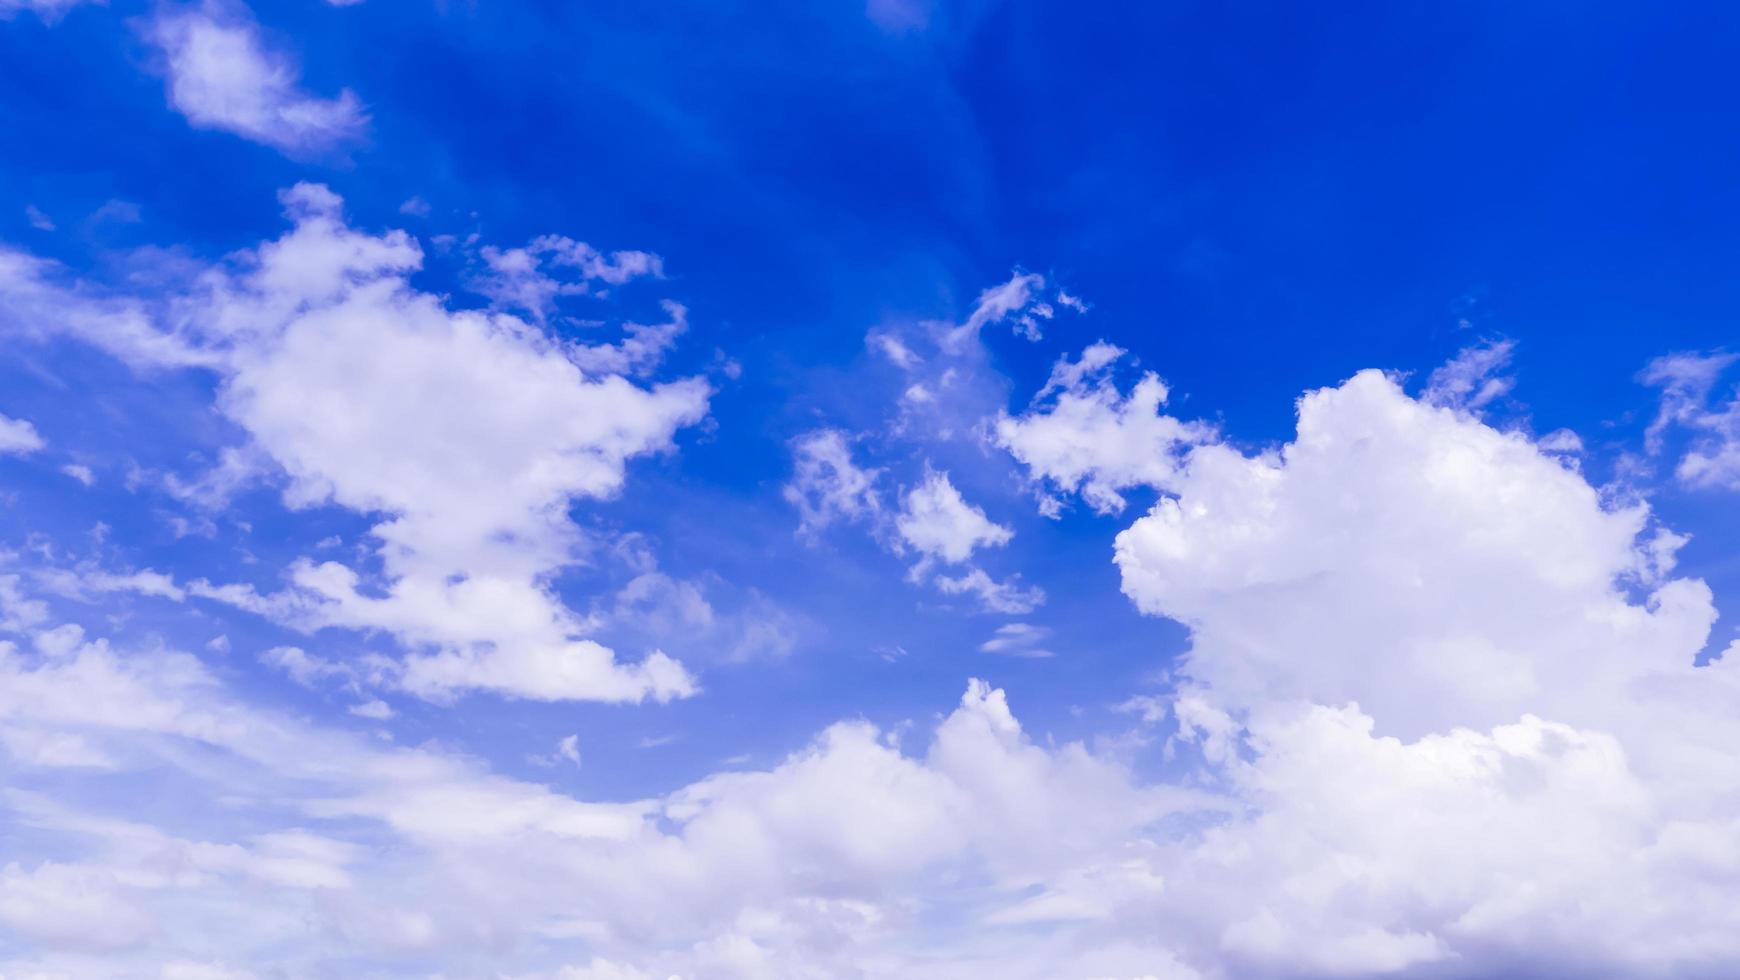 fond de ciel bleu avec des nuages blancs photo